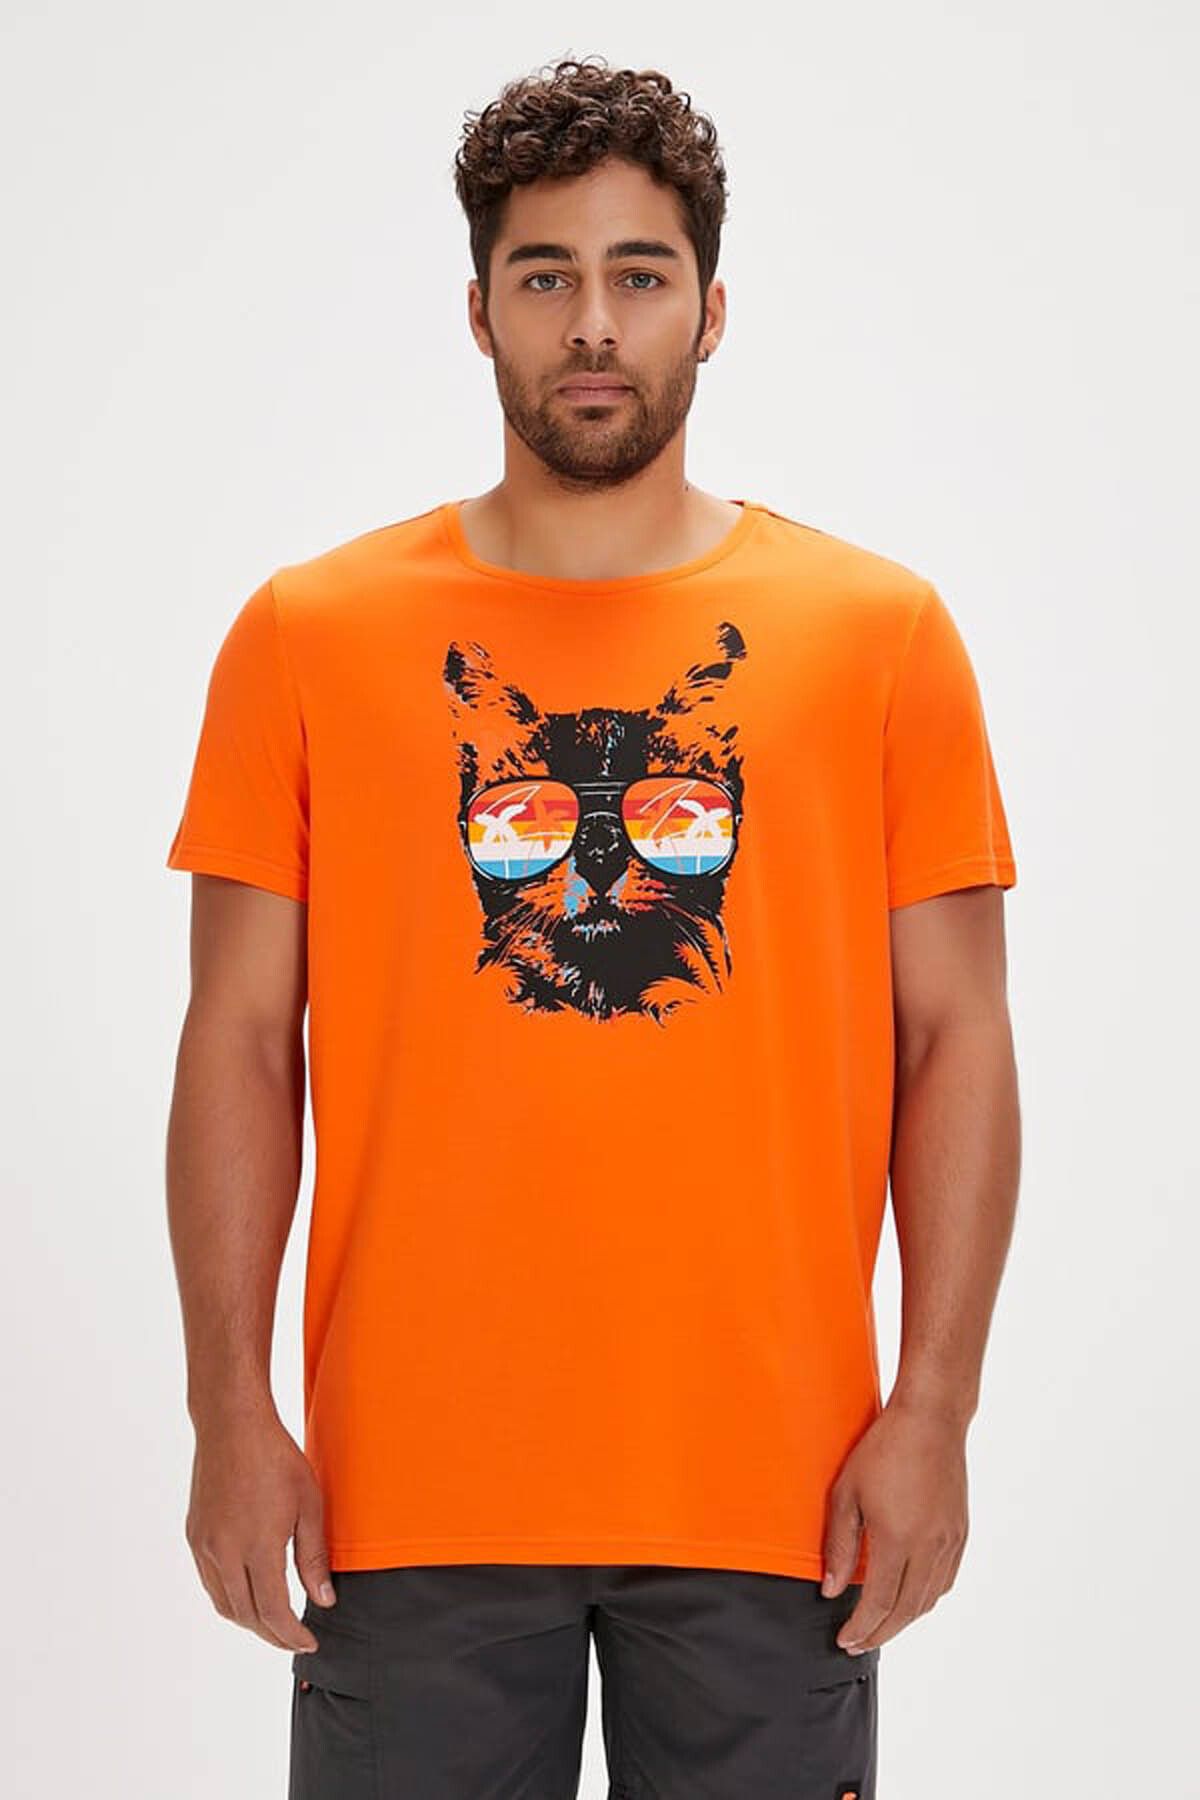 Bad Bear Erkek T-shirt Turuncu 24.01.07.011 Manx